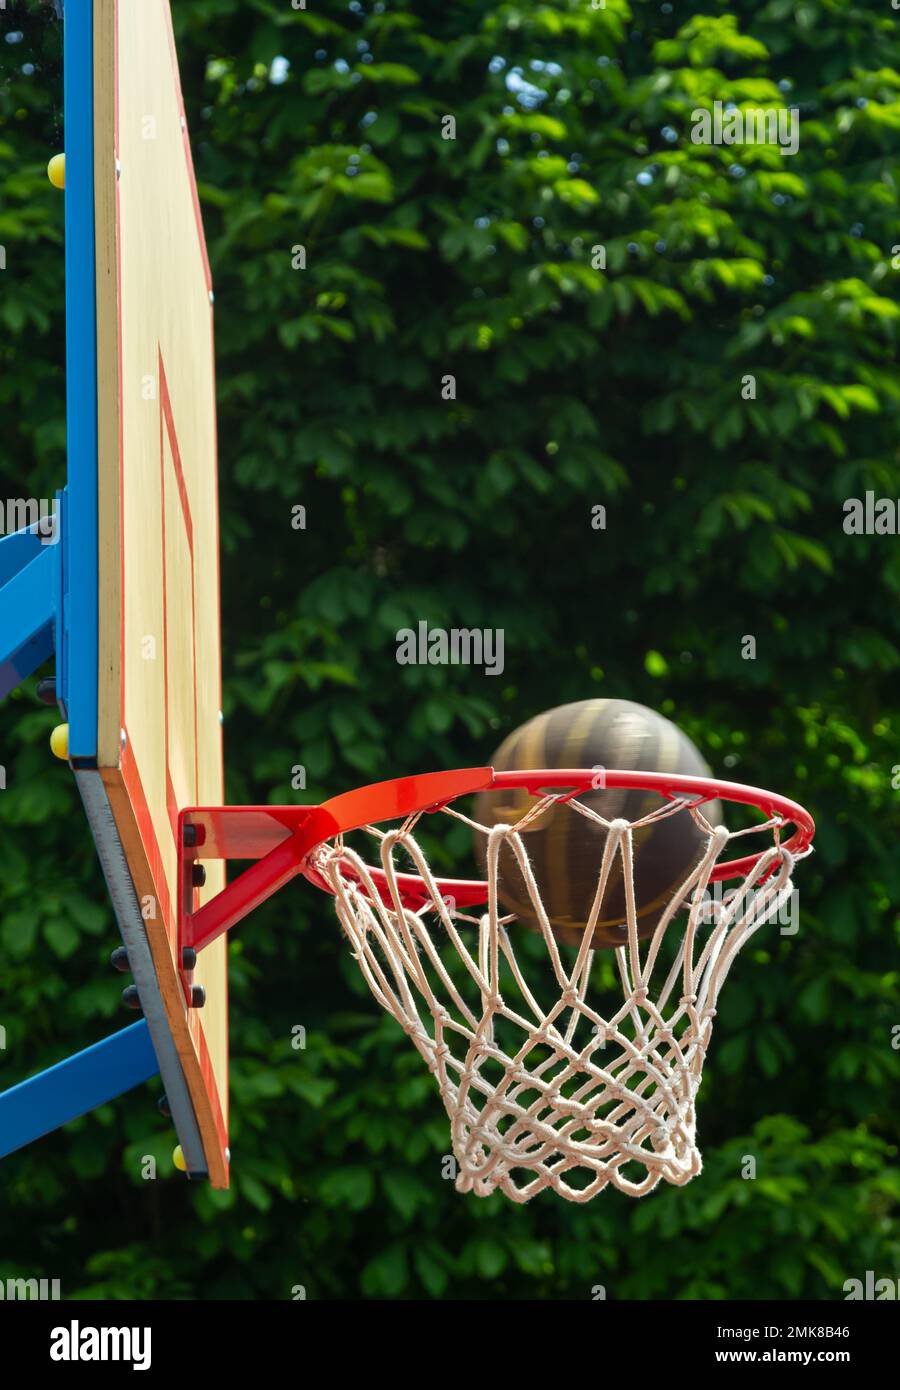 Un basket in rete. La pallina è nell'anello. Un gioco di sport. Concettuale: Vittoria, successo, colpire il bersaglio, sport. Tiro di palla riuscito. Foto Stock